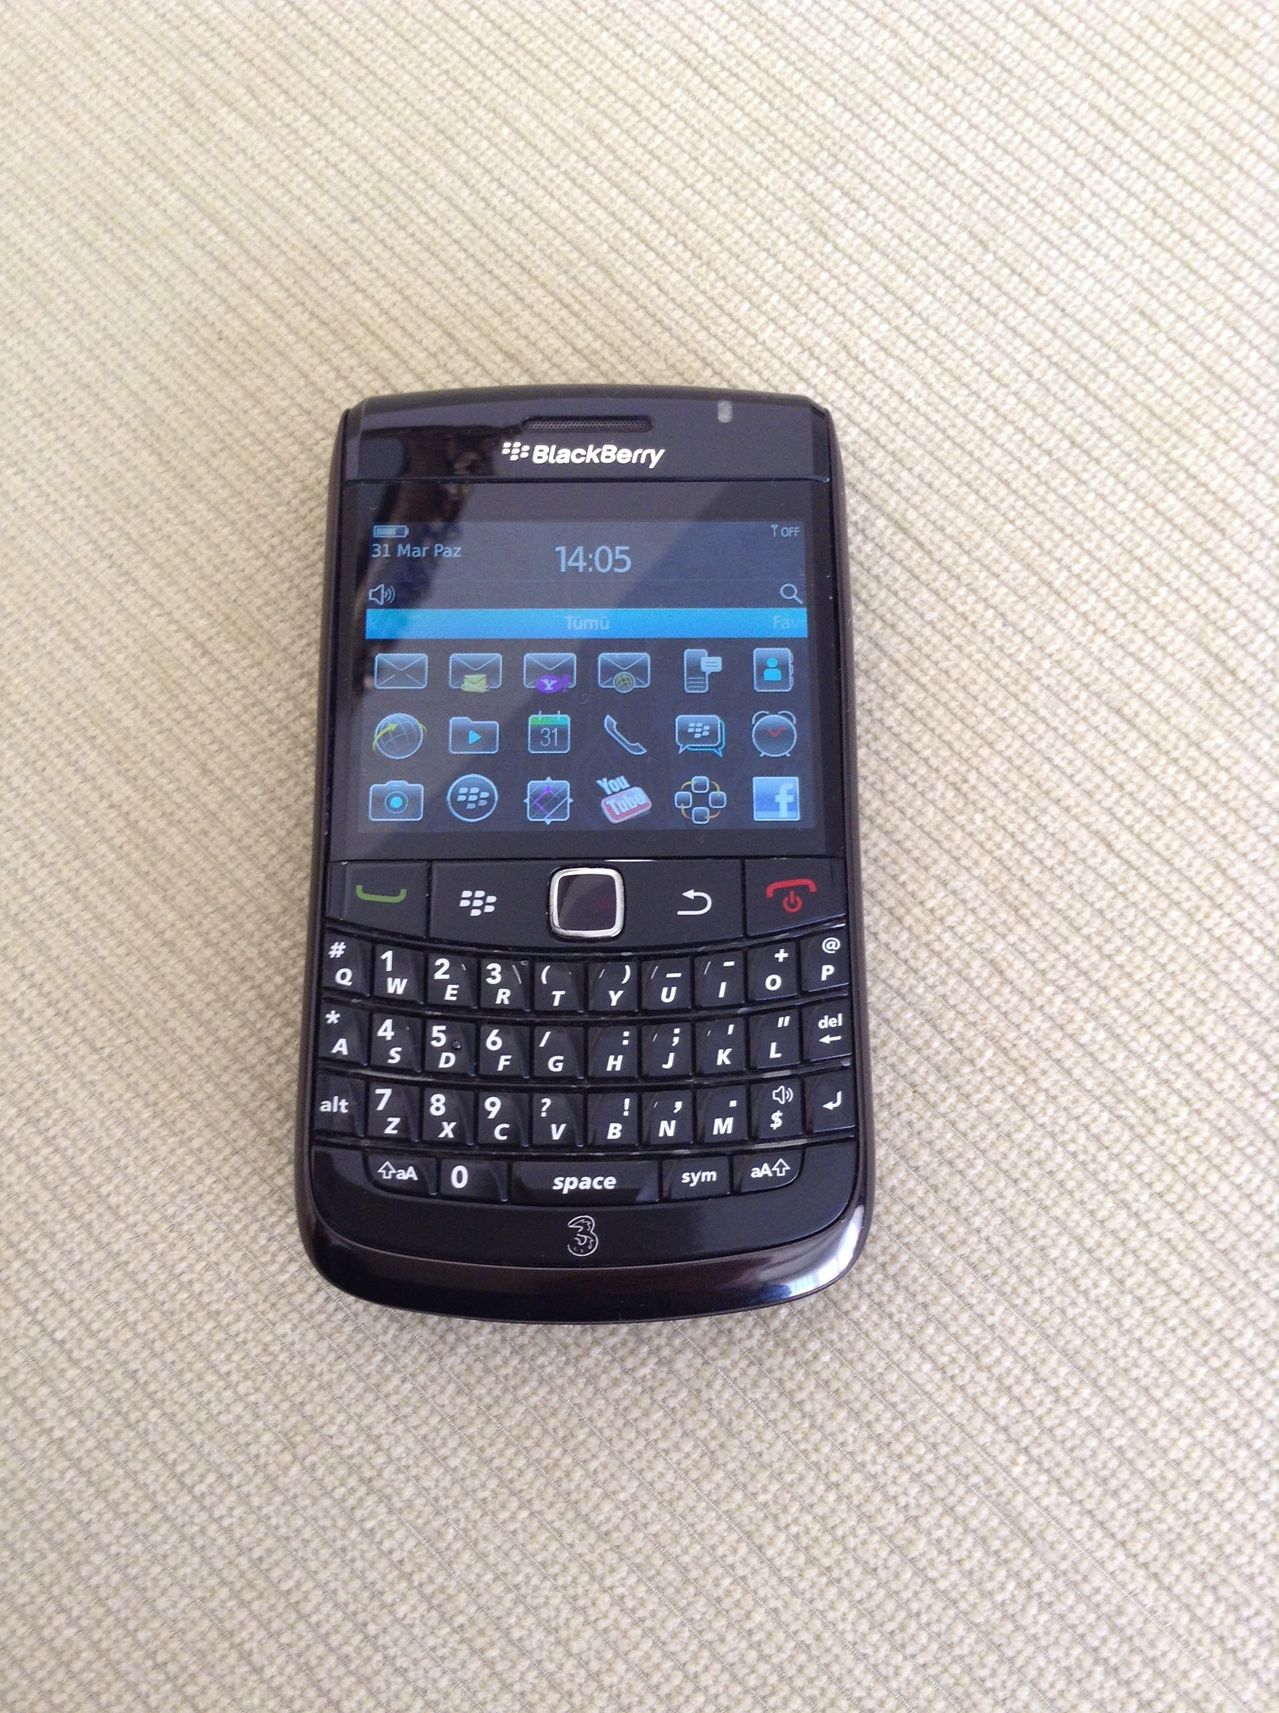  Satılık Blackberry Bold 9780 Siyah